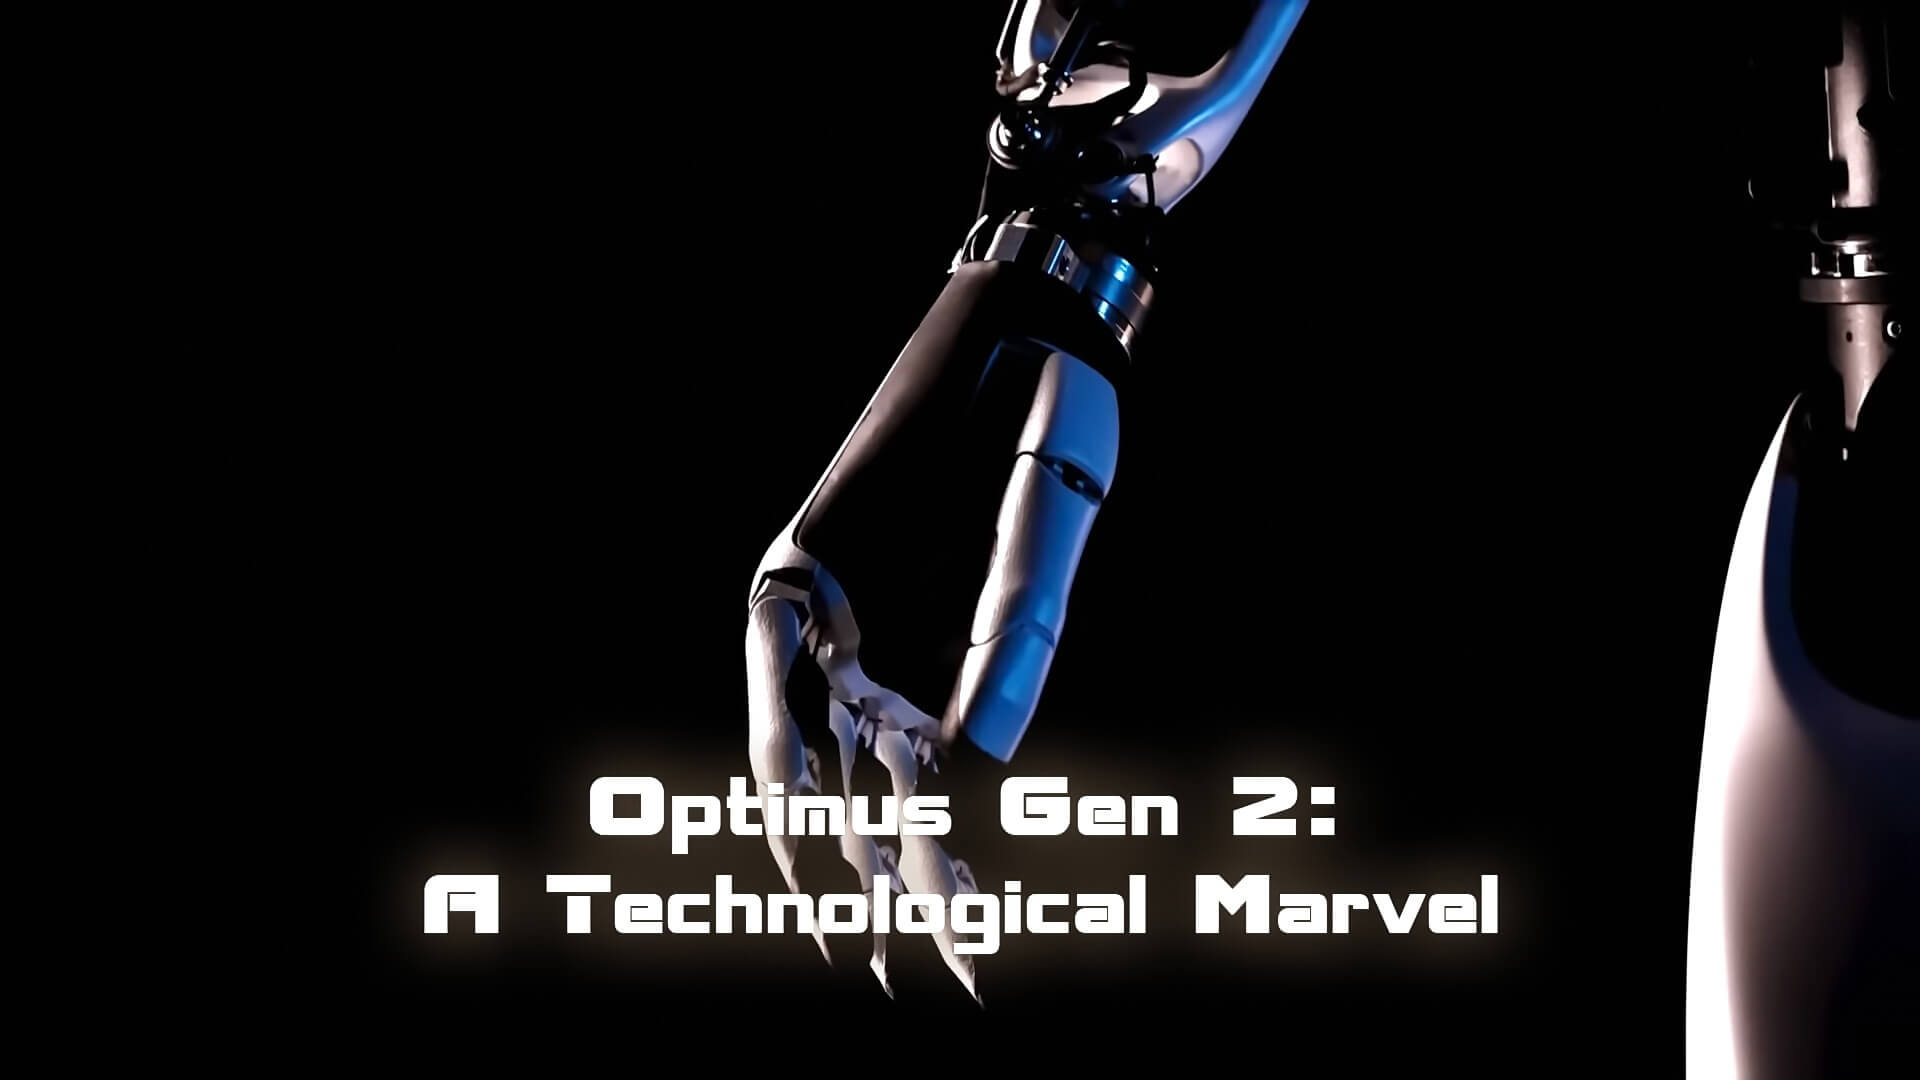 Optimus Gen 2 A Technological Marvel